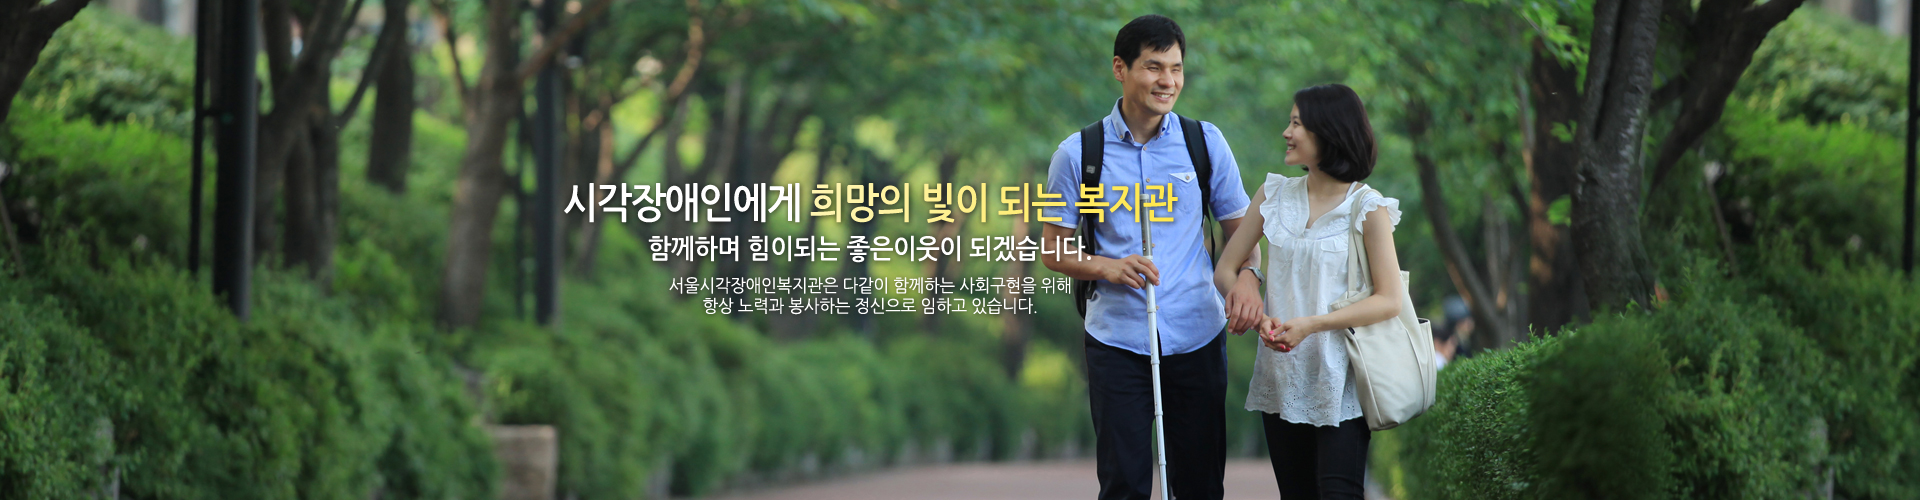 시각장애인에게 희망의 빛이 되는 복지관 함께하며 힘이되는 좋은이웃이 되겠습니다. 서울시각장애인복지관은 다같이 함께하는 사회구현을 위해 항상 노력과 봉사하는 정신으로 임하고 있습니다.